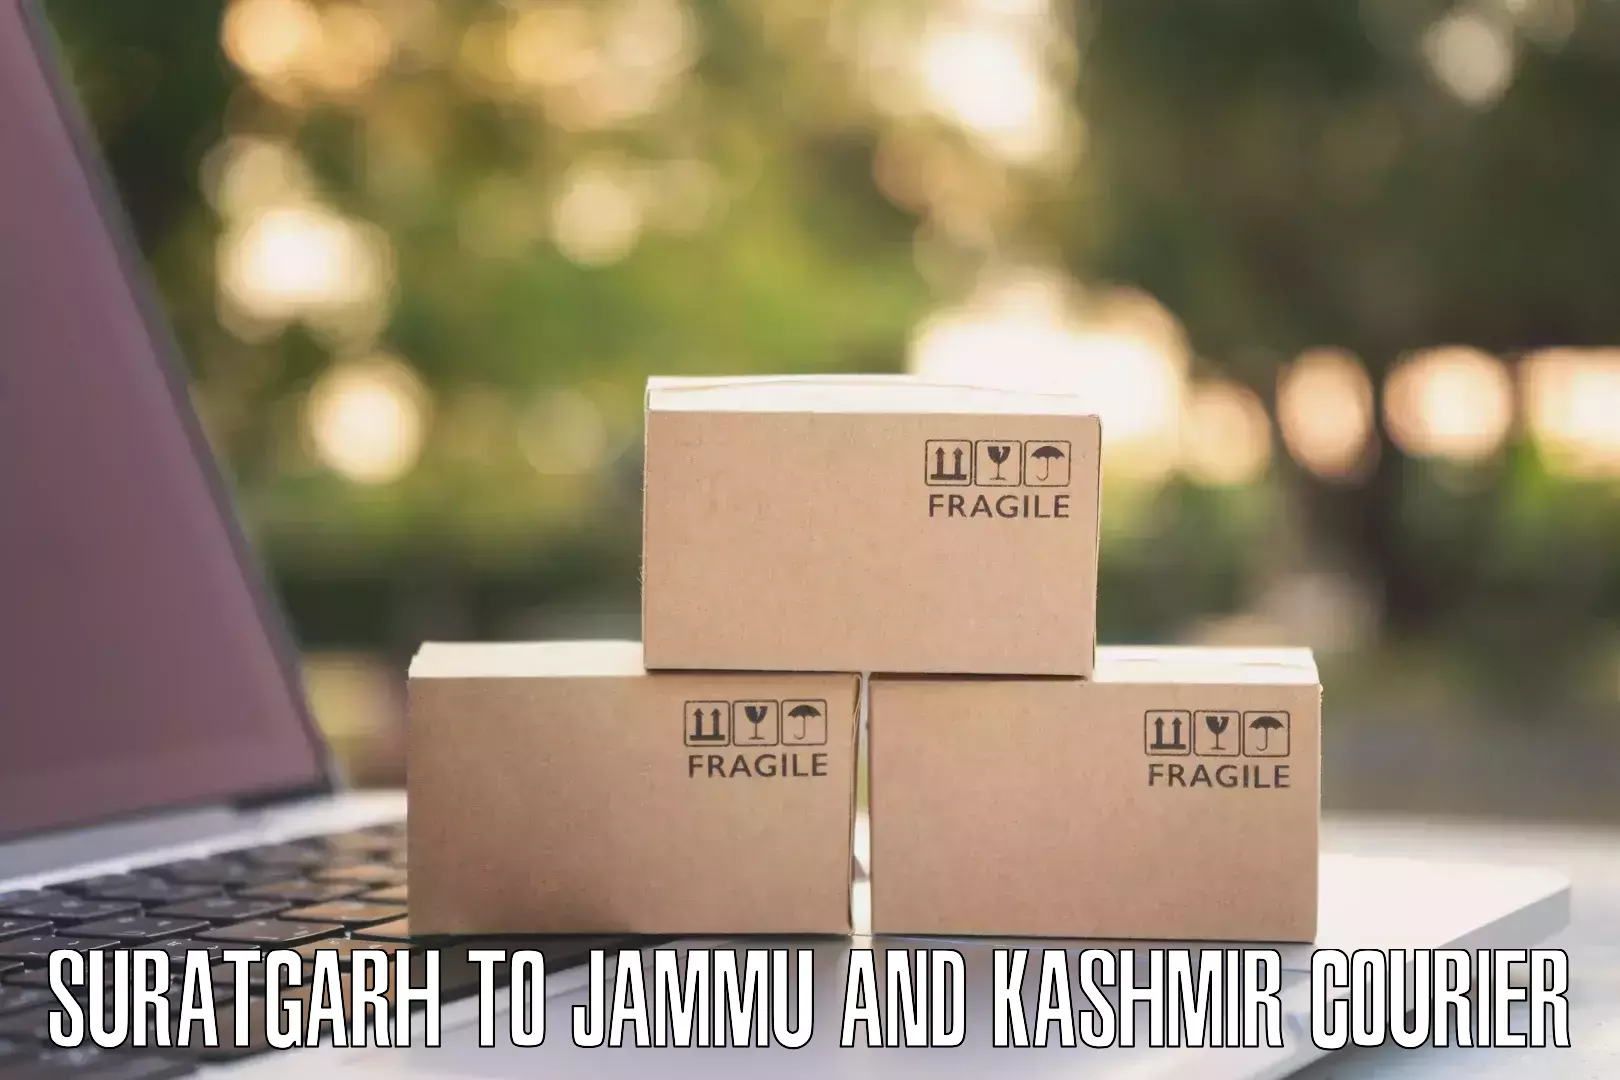 Efficient parcel transport Suratgarh to Srinagar Kashmir